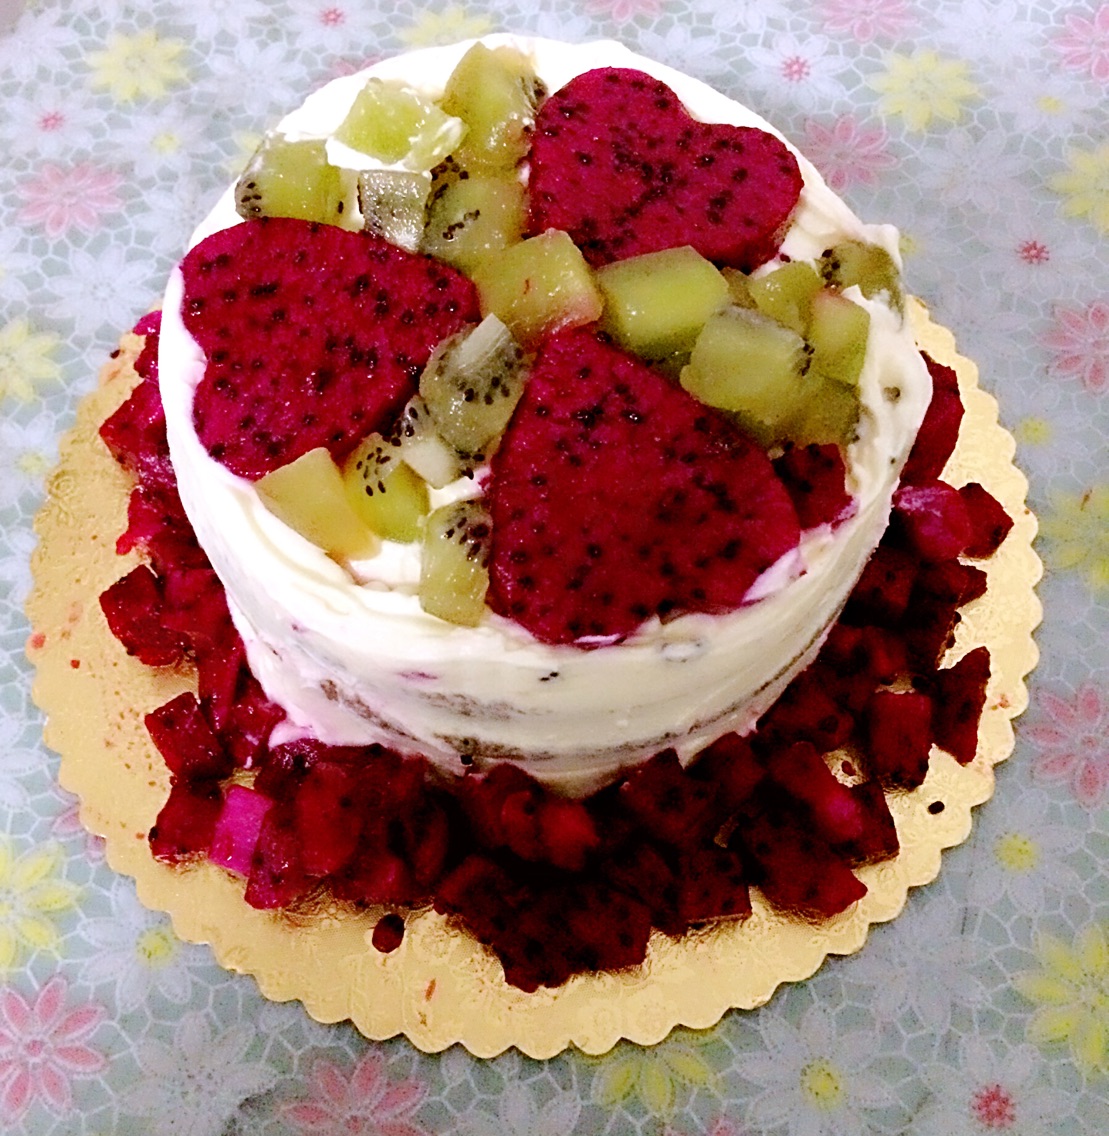 生日蛋糕上裱花的彩色奶油怎么弄的-